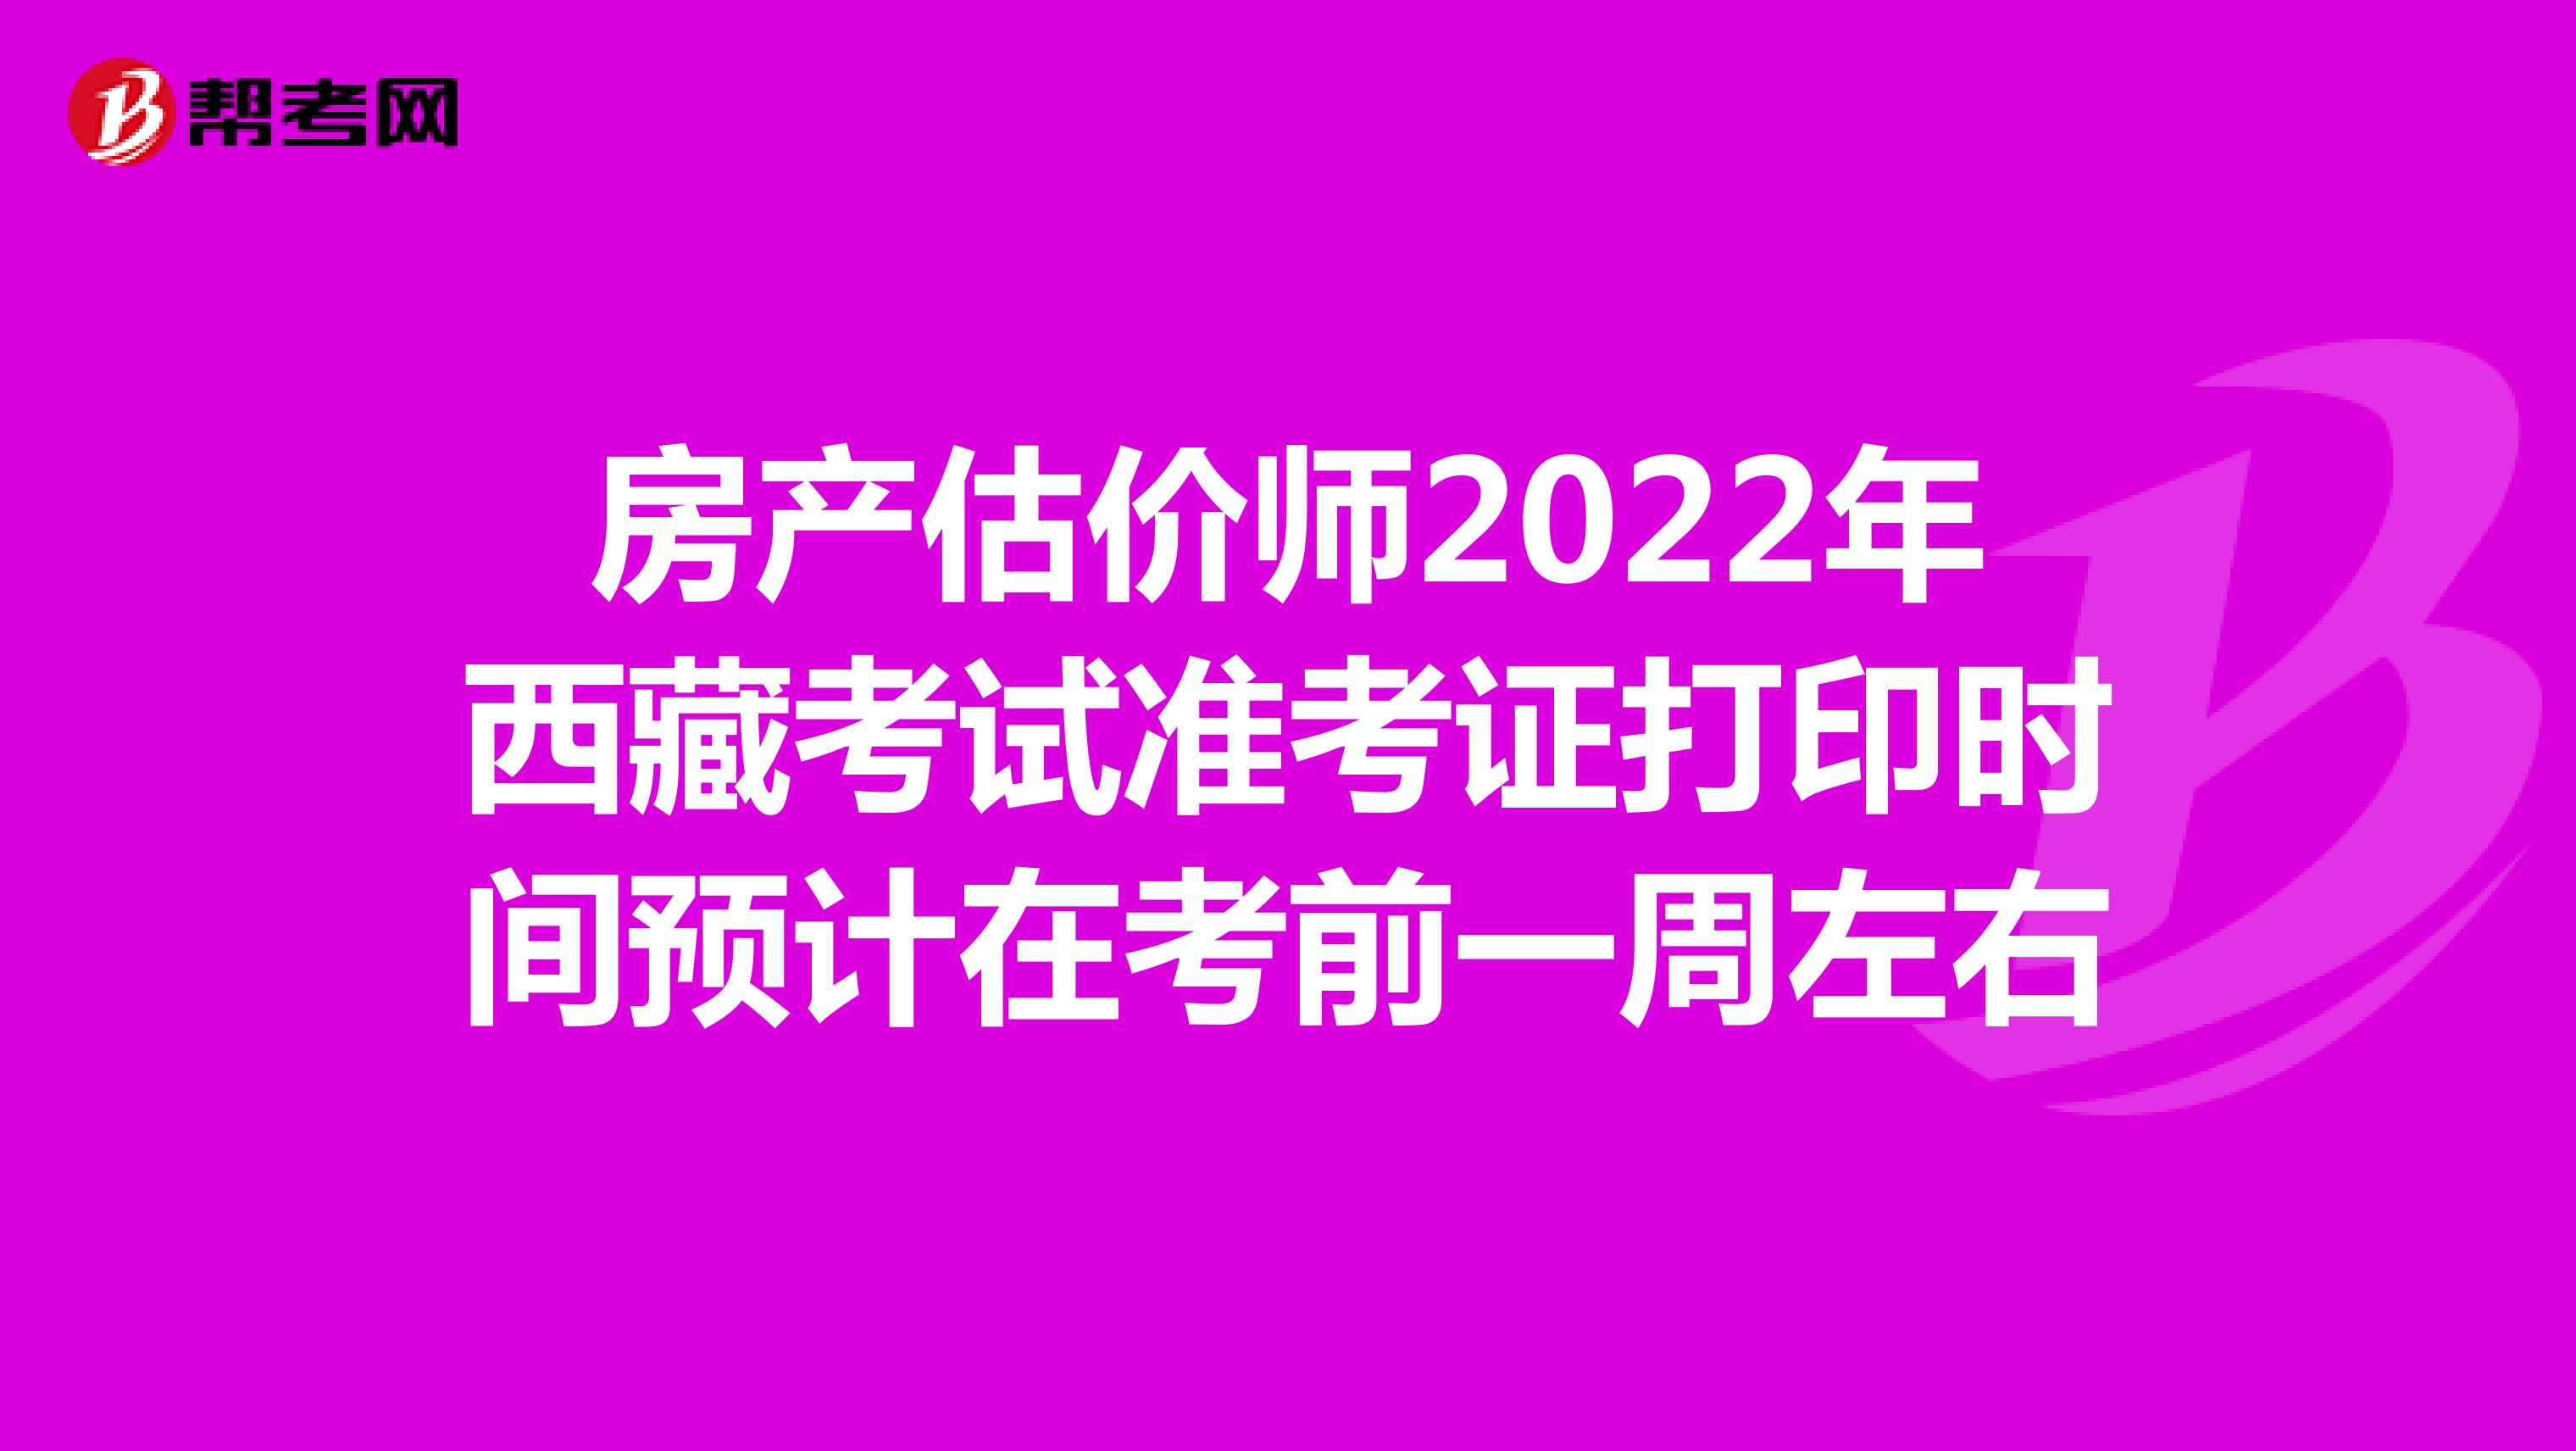 房产估价师2022年西藏考试准考证打印时间预计在考前一周左右